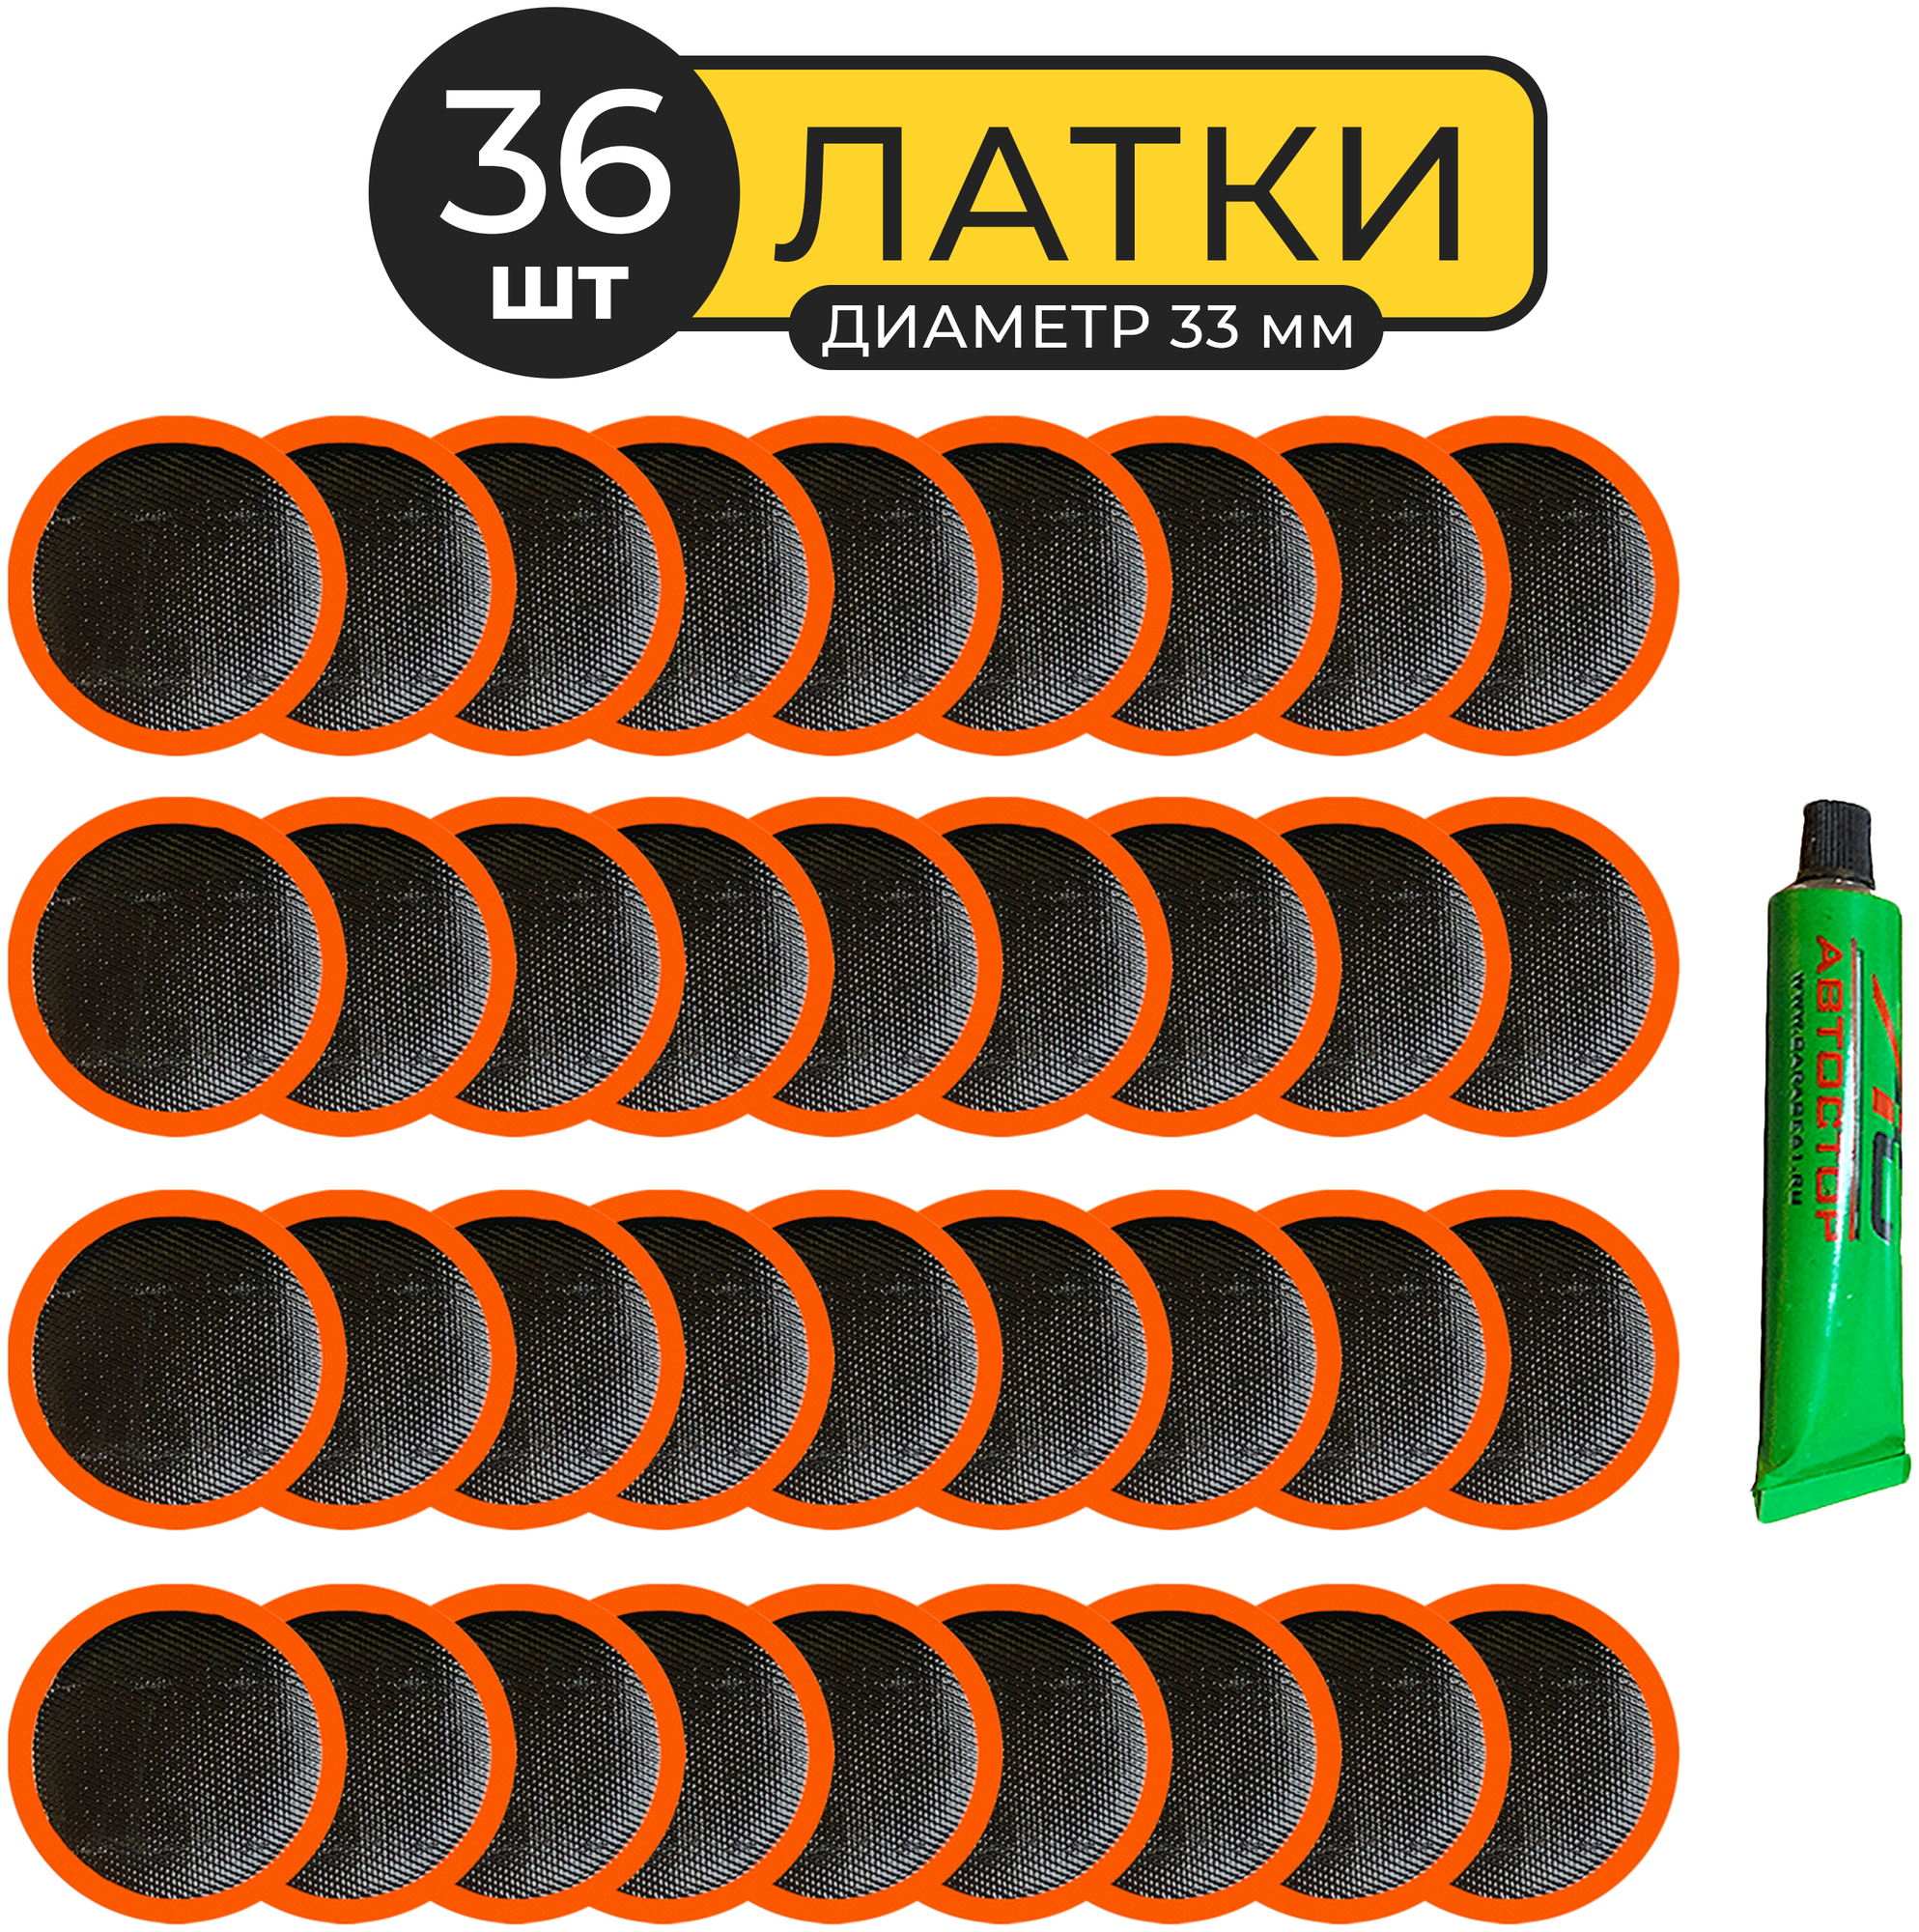 Латки велосипедные (комплект) резиновые для ремонта камер Автостор (36 шт) RS3601 заплатки